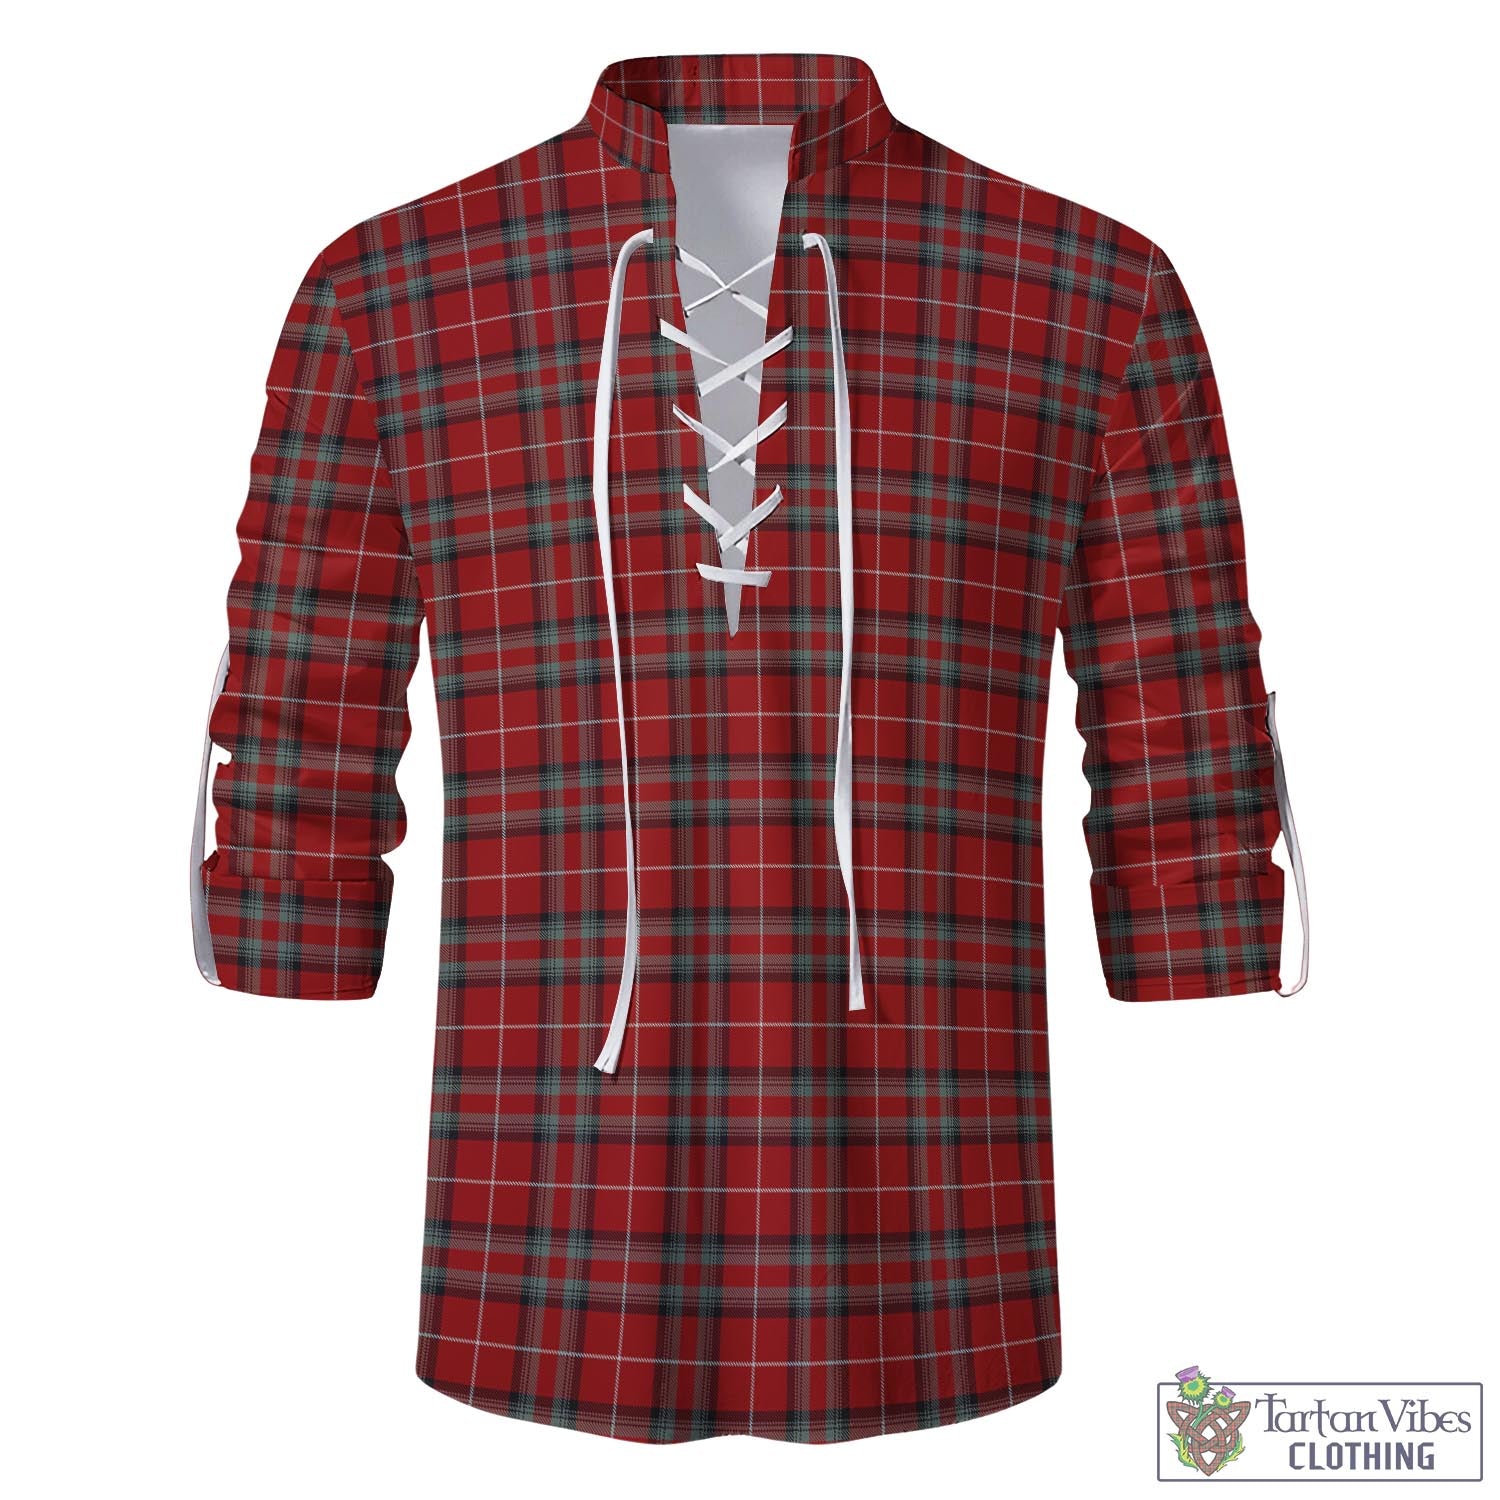 Tartan Vibes Clothing Stuart of Bute Tartan Men's Scottish Traditional Jacobite Ghillie Kilt Shirt